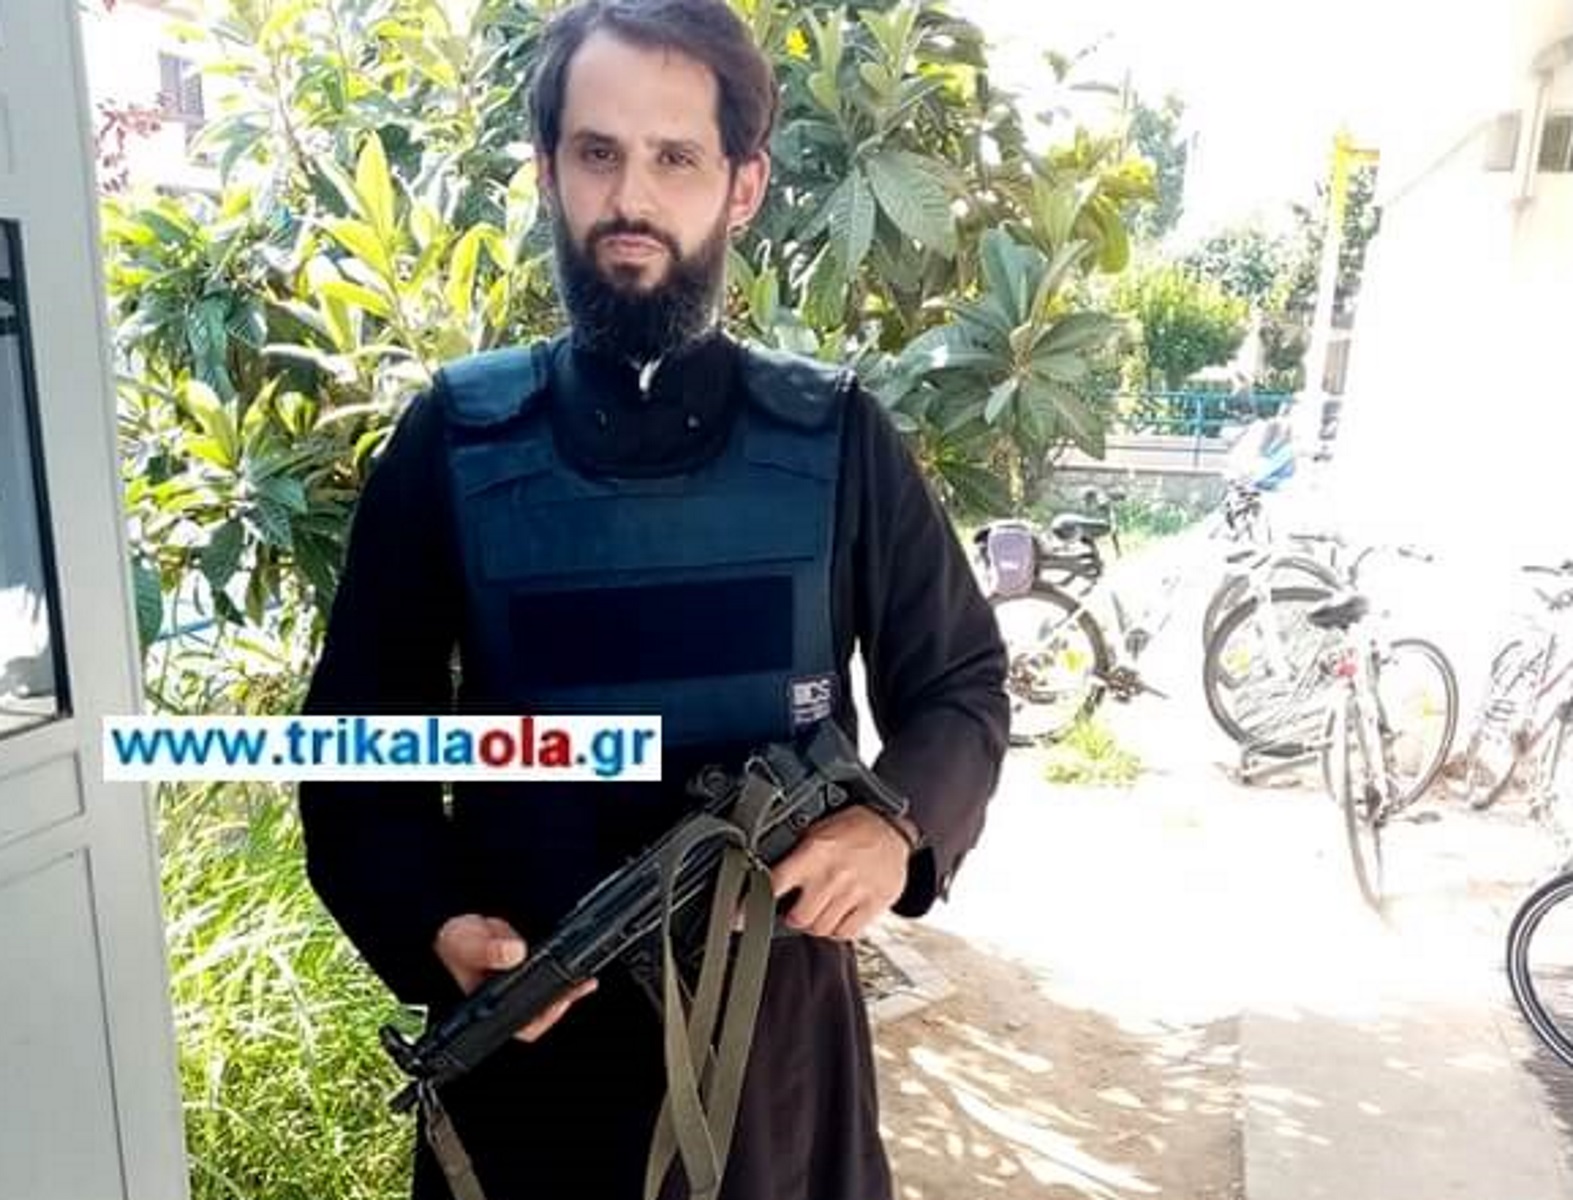 Ο παπάς – αστυνομικός που φυλάει σκοπιά με… όπλο στα Τρίκαλα!